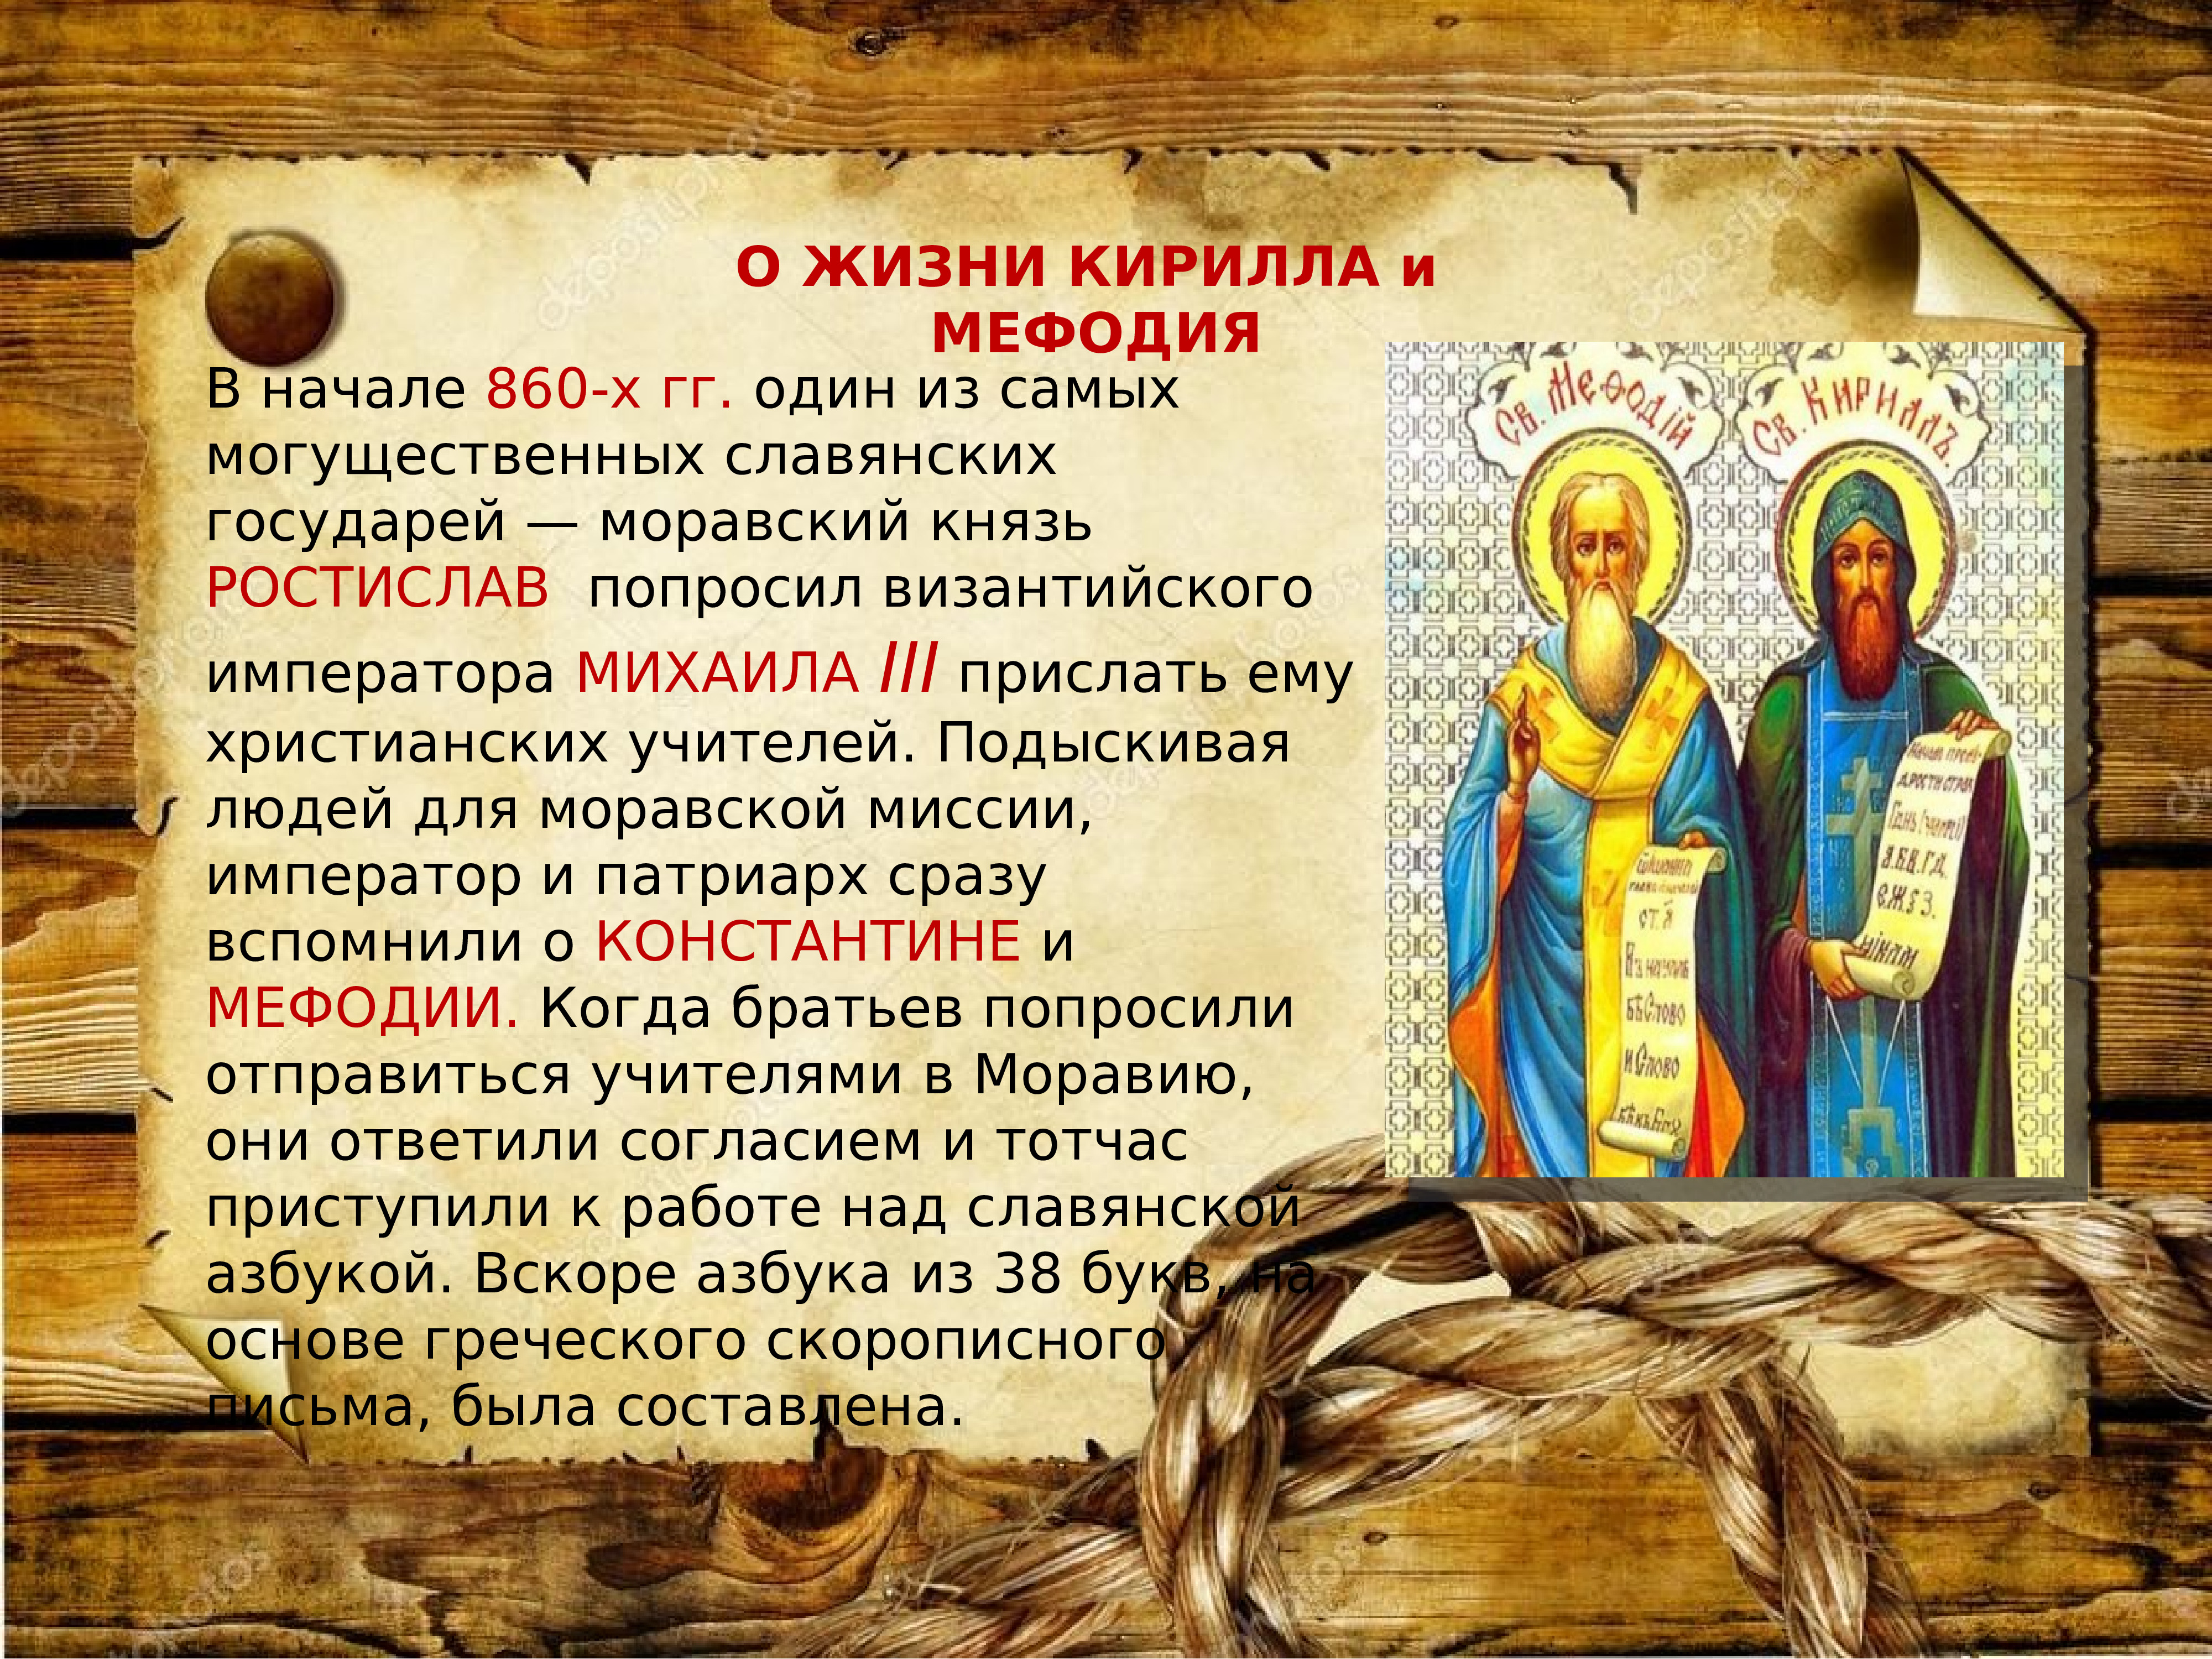 24 Мая день святых Кирилла и Мефодия